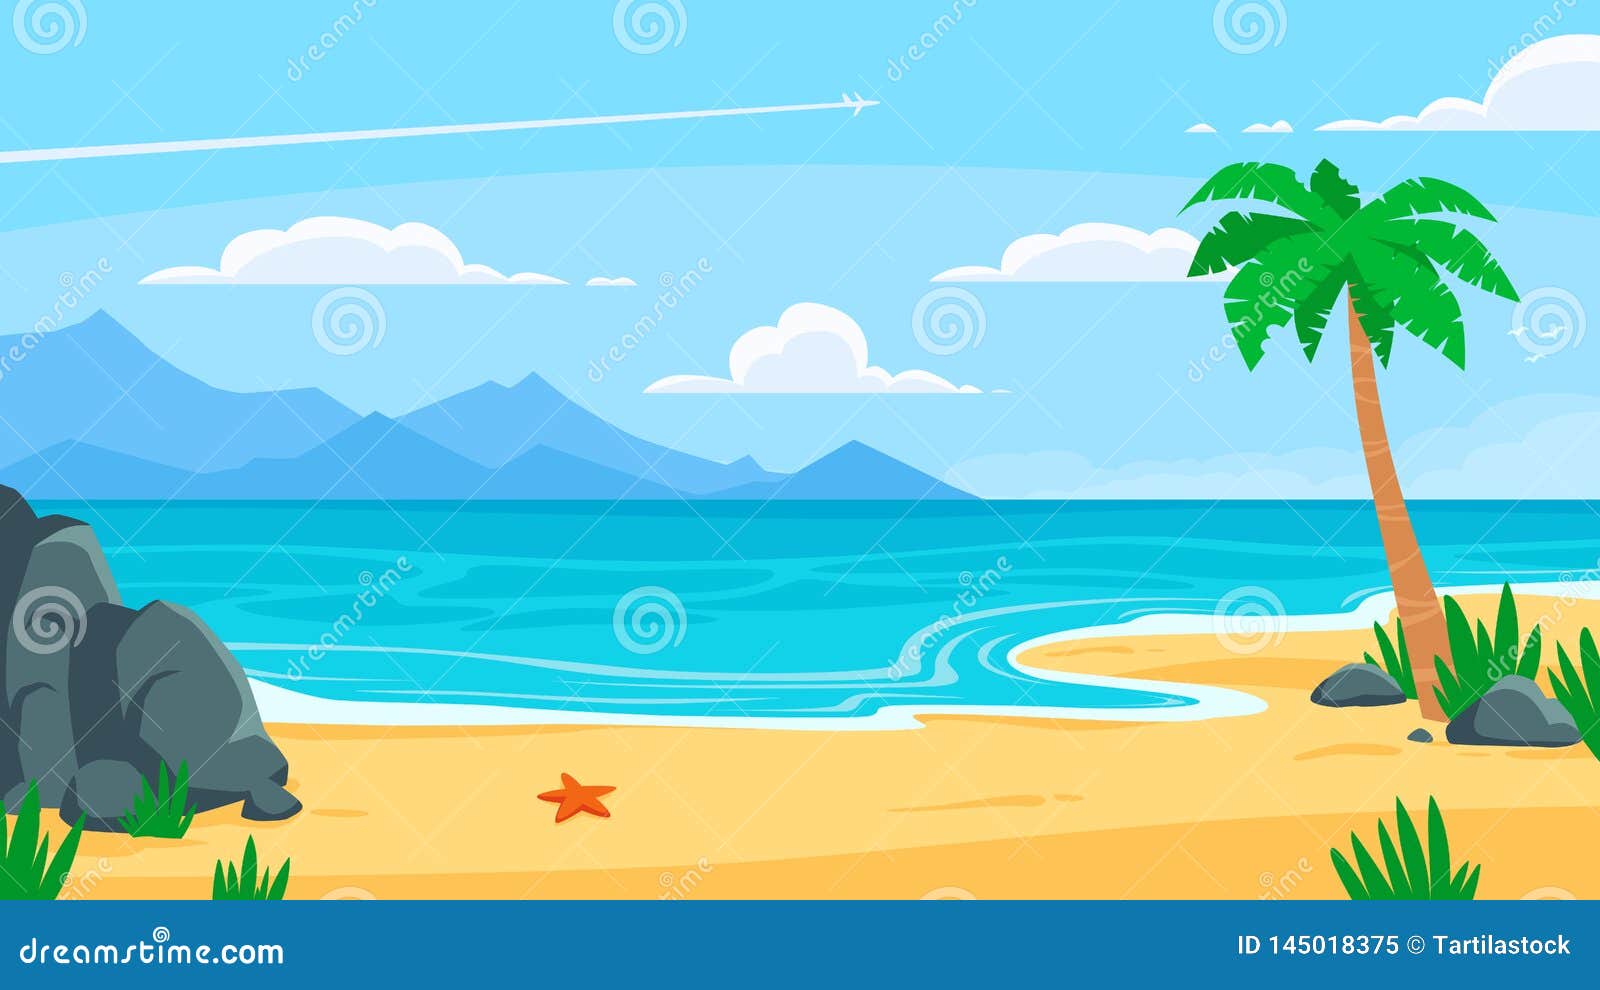 Bãi biển là nơi thư giãn tuyệt vời để tránh xa những căng thẳng trong cuộc sống. Những hình ảnh nền bãi biển sẽ khiến bạn như đang đứng trước một khung cảnh thật sự. Hãy thưởng thức những bức hình nền bãi biển để tìm thấy sự yên bình và thư giãn.